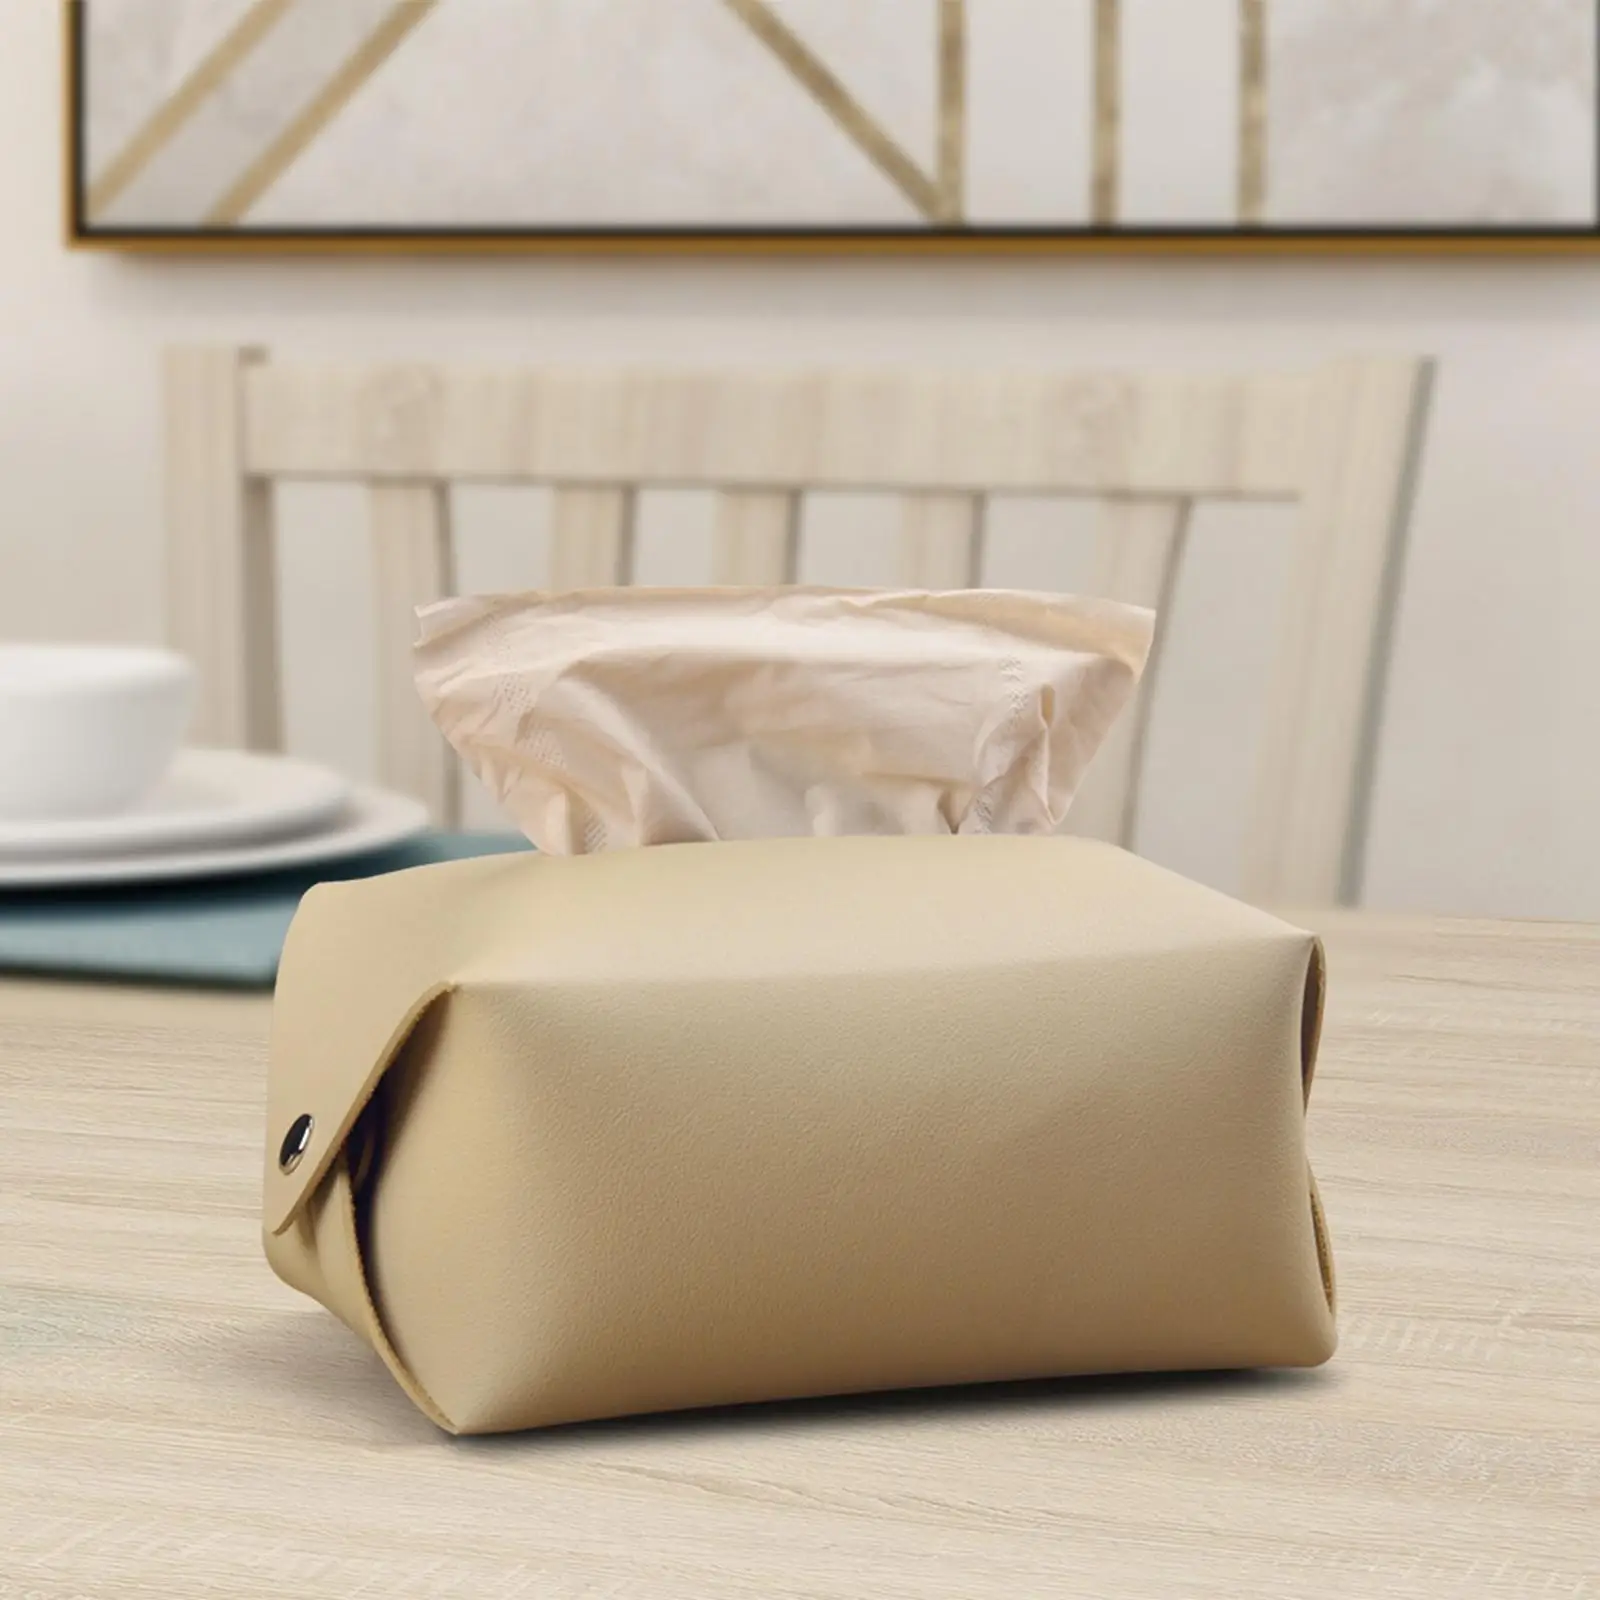 Tissue Box Cover Decorative Creative Napkin Holder Paper Box for Countertop Car Home